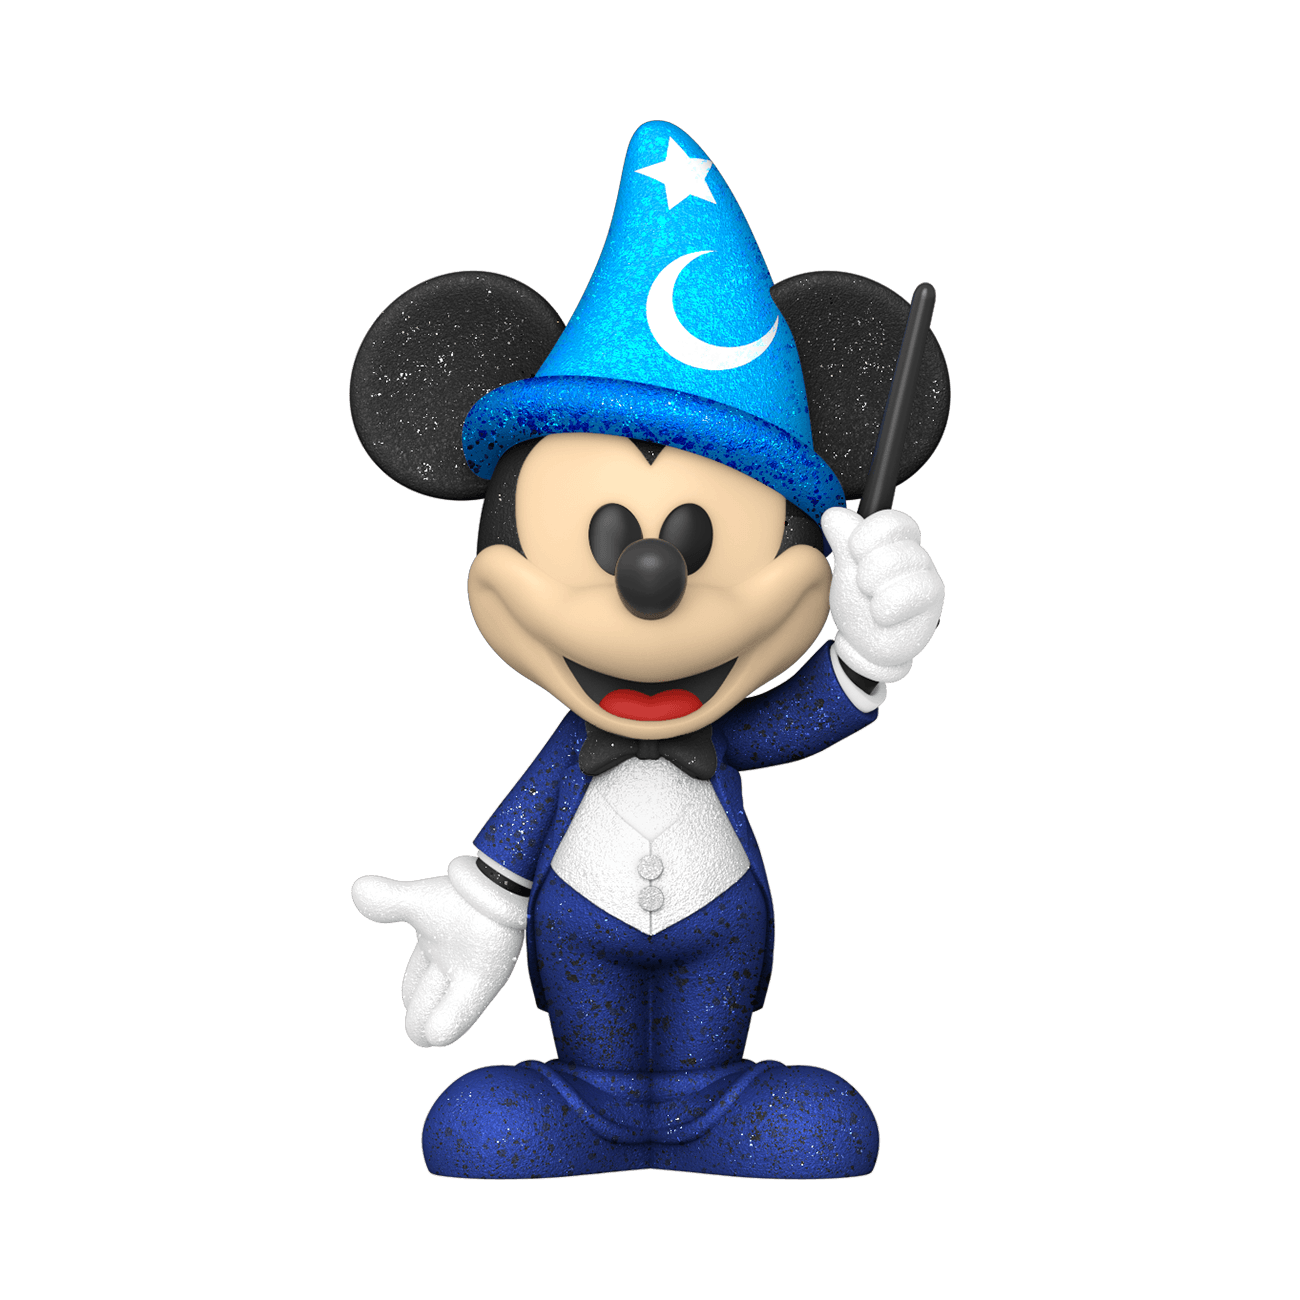 Funko Soda Philharmagic Mickey Mouse - Disney - BumbleToys - 18+, Action Figures, Boys, Disney, Funko, Mickey Mouse, Pre-Order